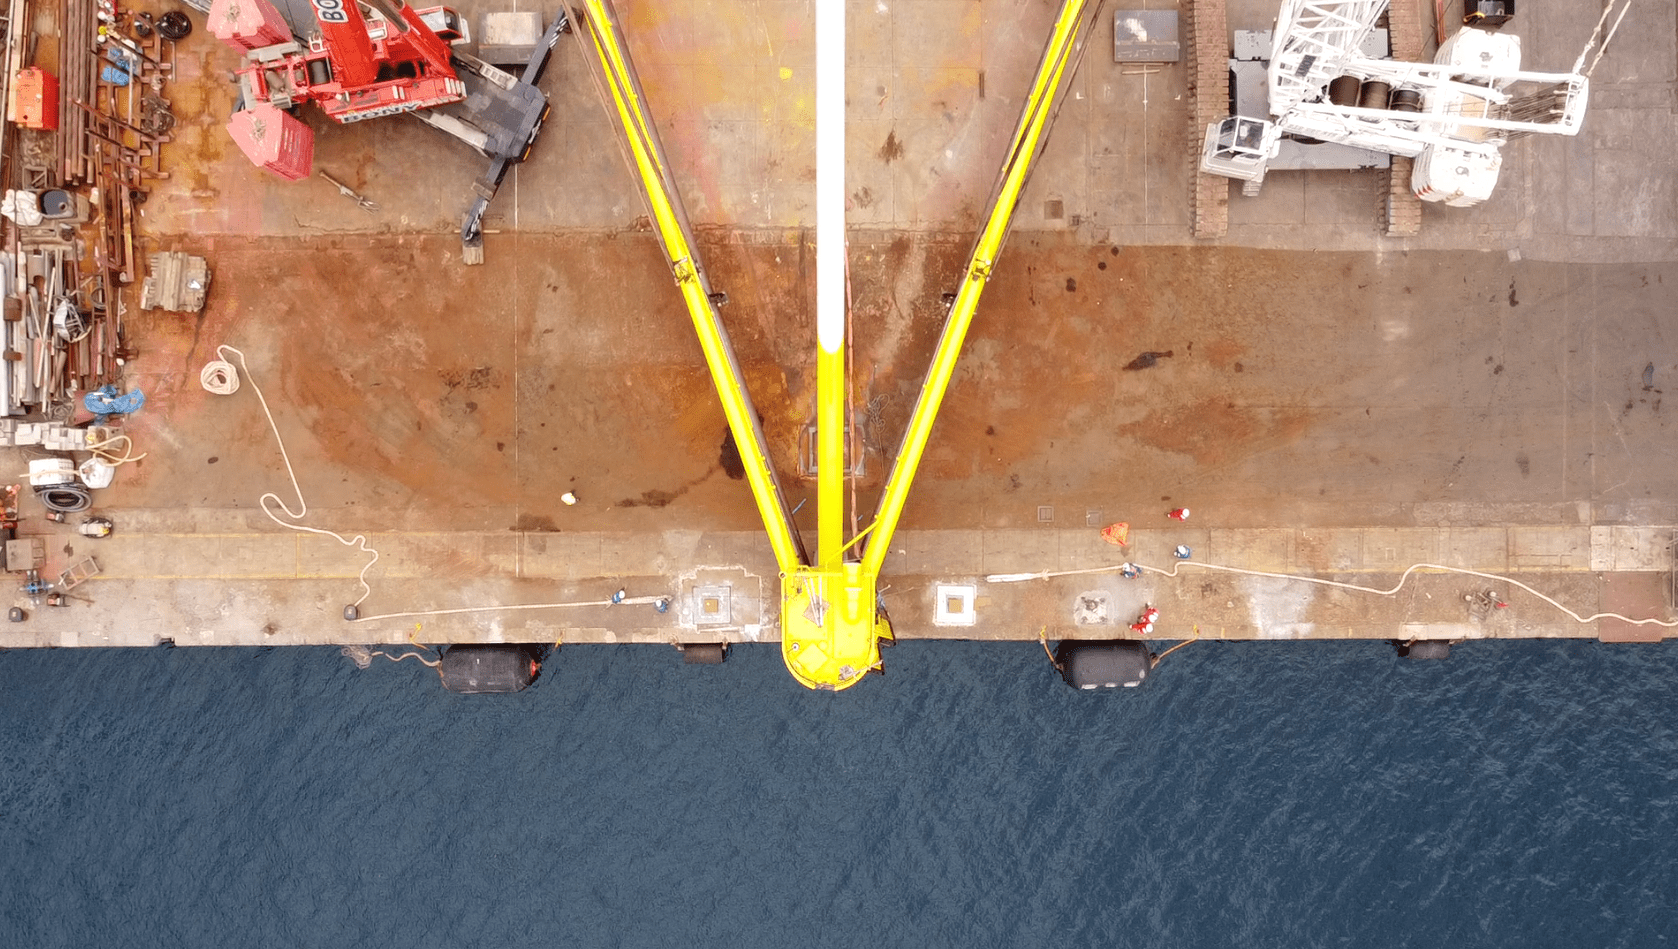 Load Out at Hidramar Shipyards